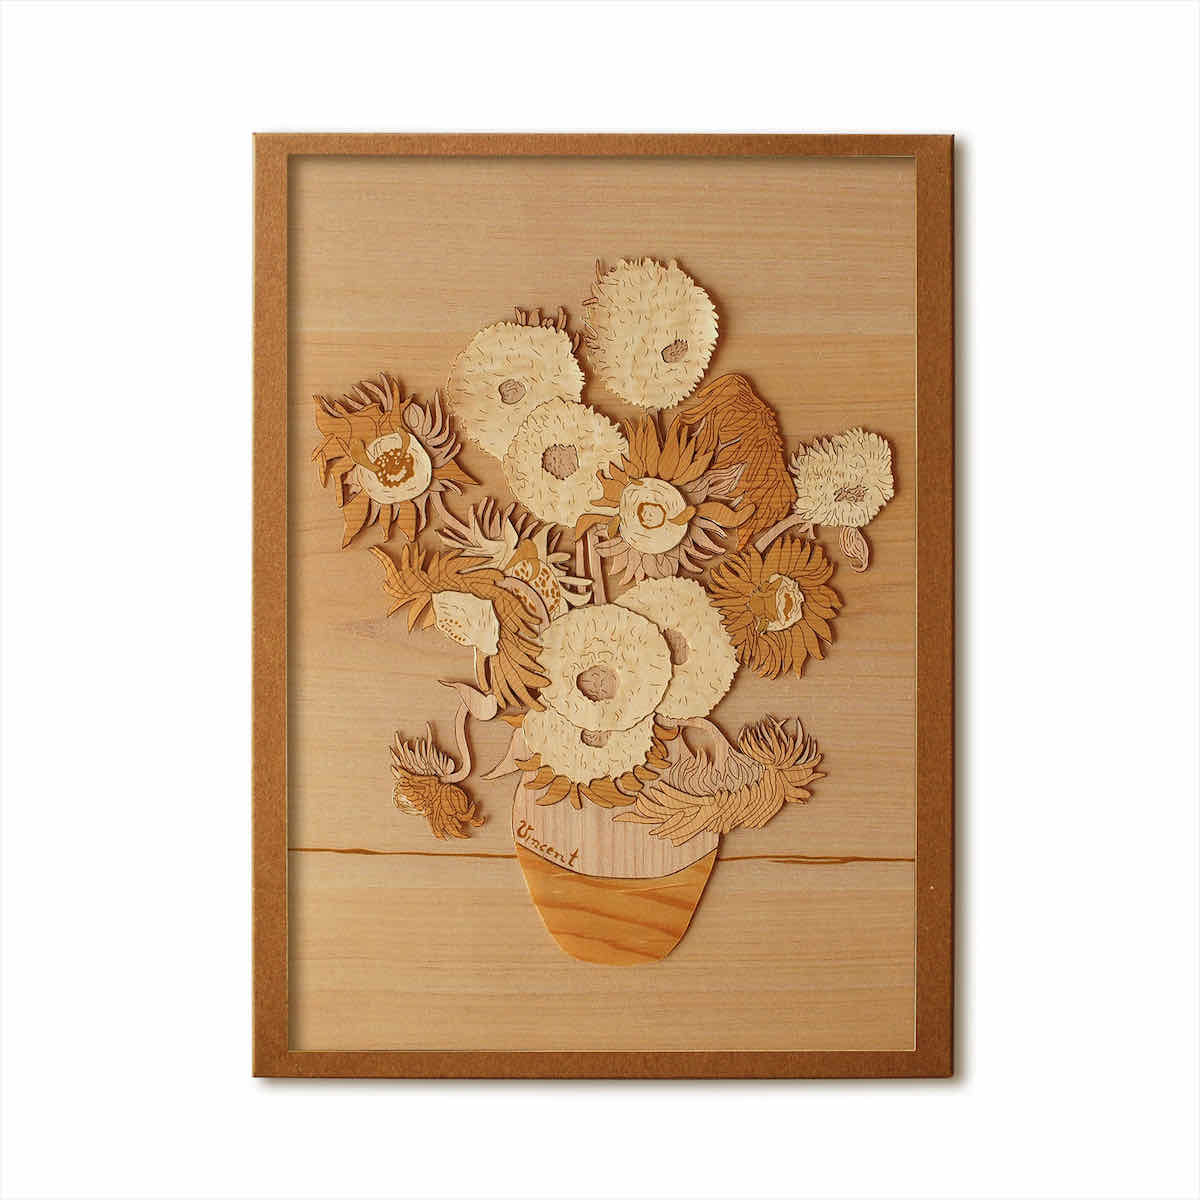 【商品の説明】後期印象派の画家フィンセント・ファン・ゴッホが描いた1888年の作品。ゴッホはひまわりをモチーフに10点以上の絵画を制作しており、この花への強い愛着がうかがえます。日本の浮世絵からも大きな影響を受けたゴッホは、構図や色使いのみならず、その創作スタイルをも真似ようと試みました。浮世絵が、絵師、彫師、刷り師などがそれぞれの腕を振るって生み出されることから、自らも画家を集めて芸術家の理想郷をつくろうとしました。南仏アルルをその地に選んだゴッホにとって、ひまわりの黄色は友情を示す色であり、ひまわりにはゴッホの希望が込められているといえます。本格木工細工、木はり絵。ご自身で制作することによりお求めになりやすい価格を実現。木材をご自身で加工するとなると敷居が高く感じますが、ハサミで切れますので、思ったより加工も簡単です。国産木材を使用。リビングのインテリア・壁飾りや壁掛けにどうぞ。玄関や廊下に飾ればおしゃれにお部屋を彩ります。子供部屋や寝室にもぴったり。アートフォト・水彩画・リーフパネル・風景画などの絵画・アートフレーム、フォトフレームなどをインテリアとしてお部屋に飾り、癒やしの空間を演出しませんか？新築祝い、開店祝い、結婚祝い、出産祝いや誕生祝いなどのおしゃれなギフト（贈り物）としても好評です 　仕様サイズ　210X297mm予想製作時間　10時間使用樹種 　スギ ヒノキ トチ キハダ特徴　木材すべて、国産材を使用。　特記事項・製作時にクラフトはさみ、デザインナイフ、木工用ボンドが必要です。お手もとにない場合は、100円ショップやホームセンターでお求めください。・額縁は別売りです。ご注意ください。・木はり絵は、厚みがあるため市販の額縁には収められません。当社で販売している写真・絵画用額縁には収まらないのでご注意ください。・限定生産品です。突然の品切れにより作品をご用意できない場合もあります。その際はご容赦ください。　・作品改良のため、仕様を変更する場合があります。■とっても飾りやすいサイズ感「アートパネル」や「サインフレーム」は、小さなサイズ感とシンプルなデザインで、初心者の方でも飾りやすいアート。簡単に飾れて、お部屋のワンポイントになり、おしゃれなインテリアが目指せます。■色々なタイプから選べます「壁掛けタイプ」の他にも「置くタイプ」の作品もあり、場所を選ばず飾れるので、リビング・書斎・子供部屋・寝室・玄関・キッチンはもちろん、デスク・トイレや窓際などにも。フレーム付き（額入り）ならポスターのようにすぐにお楽しみ頂けます。写真を入れるフォトフレームタイプの作品なら、大切な思い出をより一層素敵に演出することも出来ます。■様々なモチーフを取り揃えましたかわいい動物モチーフ、メッセージ付きのアートフレーム、爽やかで風水的に良い色合いの作品など、様々なモチーフのアートを取り揃えました。流行のモダンな雰囲気づくりに、日々の癒しに、油絵などの絵画を飾る前の入門用に・・・と、目的にあった作品がきっとみつかるはず。■プレゼントにも人気のお品です絵画は女性にも男性にも喜んでもらえるプレゼントです。誕生日・母の日・父の日・敬老の日・クリスマス・お正月・バレンタインデー・ホワイトデーなどのシーズンギフトはもちろん、就職祝い・卒業祝い・開店祝い・開業祝い・転居や結婚や新築など人生の節目や記念日のギフトにもピッタリです。類似商品はこちら本格木工細工 木はり絵手作りキット ハードレベ6,181円本格木工細工 木はり絵手作りキット ハードレベ6,181円本格木工細工 木はり絵手作りキット ハードレベ6,181円本格木工細工 木はり絵手作りキット ハードレベ6,181円本格木工細工 木はり絵手作りキット ハードレベ6,181円本格木工細工 木はり絵手作りキット ハードレベ6,181円本格木工細工 木はり絵手作りキット ハードレベ6,181円本格木工細工 木はり絵手作りキット ハードレベ6,181円本格木工細工 木はり絵手作りキット ハードレベ6,181円本格木工細工 木はり絵手作りキット ハードレベ6,181円新着商品はこちら2024/5/27絵画 サム トフト アートフレーム インテリア17,580円2024/5/27絵画 サム トフト アートフレーム インテリア17,580円2024/5/27絵画 白石 創多 壁掛け 名画 オマージュ 額18,580円2024/5/27絵画 白石 創多 壁掛け 名画 オマージュ 額18,580円2024/5/27絵画 白石 創多 壁掛け 名画 オマージュ 額18,580円2024/05/29 更新本格木工細工 木はり絵本格木工細工（文章：あゆわら店主 榎本）「木目と立体感がきれいだなぁ」この「木はり絵」を見たときの第一印象です。木って、種類によって色の濃さが違います。その木材を重ねて、形づくられた絵。木の色のグラーデションがやさしくて心地よいです。木材の重ね合わせは、作品を立体的にする効果も。迫力ある立体と、美しい木目が特徴の本格木工細工です。お値段の理由この本格的な木工細工が作品(シート)のみだと2,000円程度。高額な国産木材のみを使用した作品です。この品質だと通常であれば5,000円以上はするはず。「なぜそんなに安いのか？」そのお値段の理由は明快。自分で作るんです！はさみで簡単♪ 木材＋和紙シート「え〜っ、木材を切って貼って自分で作るの？難しそう・・・。」わたしは不器用なので、まず そう思いました（汗そこで、「木はり絵」を取り寄せ、自分で制作に挑戦。「木を切るのってノコギリ使うイメージで切りづらそう・・・。」って思ったんですが、なんとハサミで切れちゃうんです♪見た目は立派な木。でも実は裏側に薄い和紙がはってあり、おりがみを切るような感覚で切れちゃうんです。長い線は はさみで、チョキチョキ。小さくて短いところはデザインナイフで、サクッサクッ。刃先でシートを刺しながら切りぬきます。やってみたら、楽しくて熱中してしまいました。&nbsp;&nbsp;国産木材へのこだわりサクラ、けやき、ブナ、杉、ひのき。木はり絵では色の異なるたくさんの木材を使用。その木材すべてが、日本の国産木材。戦前 戦後に植えた杉などの木。気づけば数十年がたち、伐採の時期に。しかし、安い海外木材に押され、国産木材の伐採は進んでいません。増えすぎた木材は、スギ花粉や地滑り・洪水など災害の原因にも。日本の林業復活のため、木はり絵は国産木材使用にこだわっています。思いのこもったギフトに自分で手作りする「木はり絵」、思いを込めるギフトにぴったり。買って渡すだけだと思いが伝わらない。そんな時に、贈る人への思いを込めて手作り♪手作りしたことをメッセージに添えて木はり絵を贈りませんか？&nbsp;